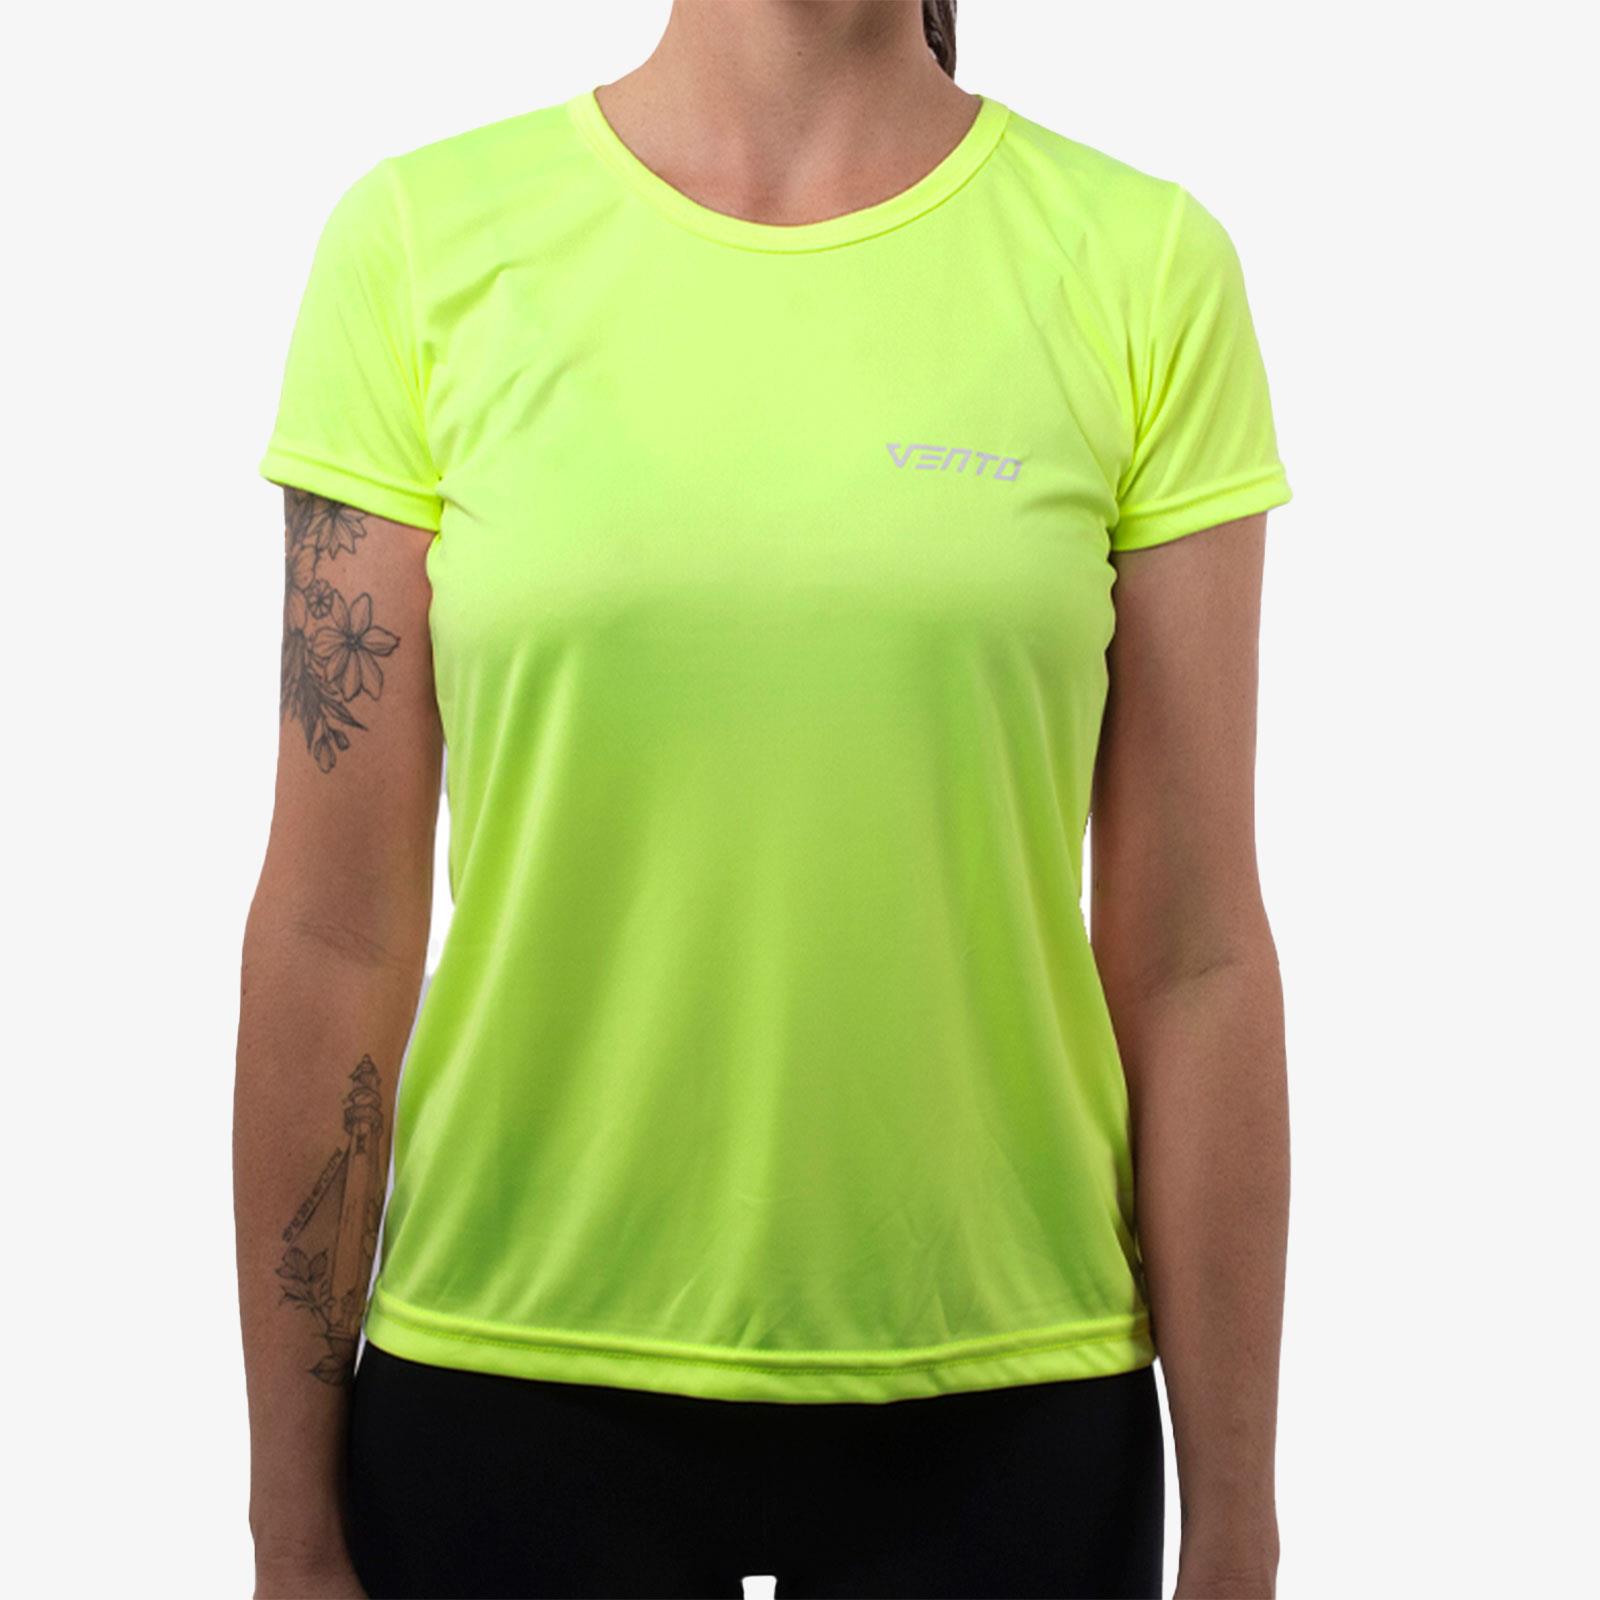 Camiseta Dry Fit Verde Feminina Vento